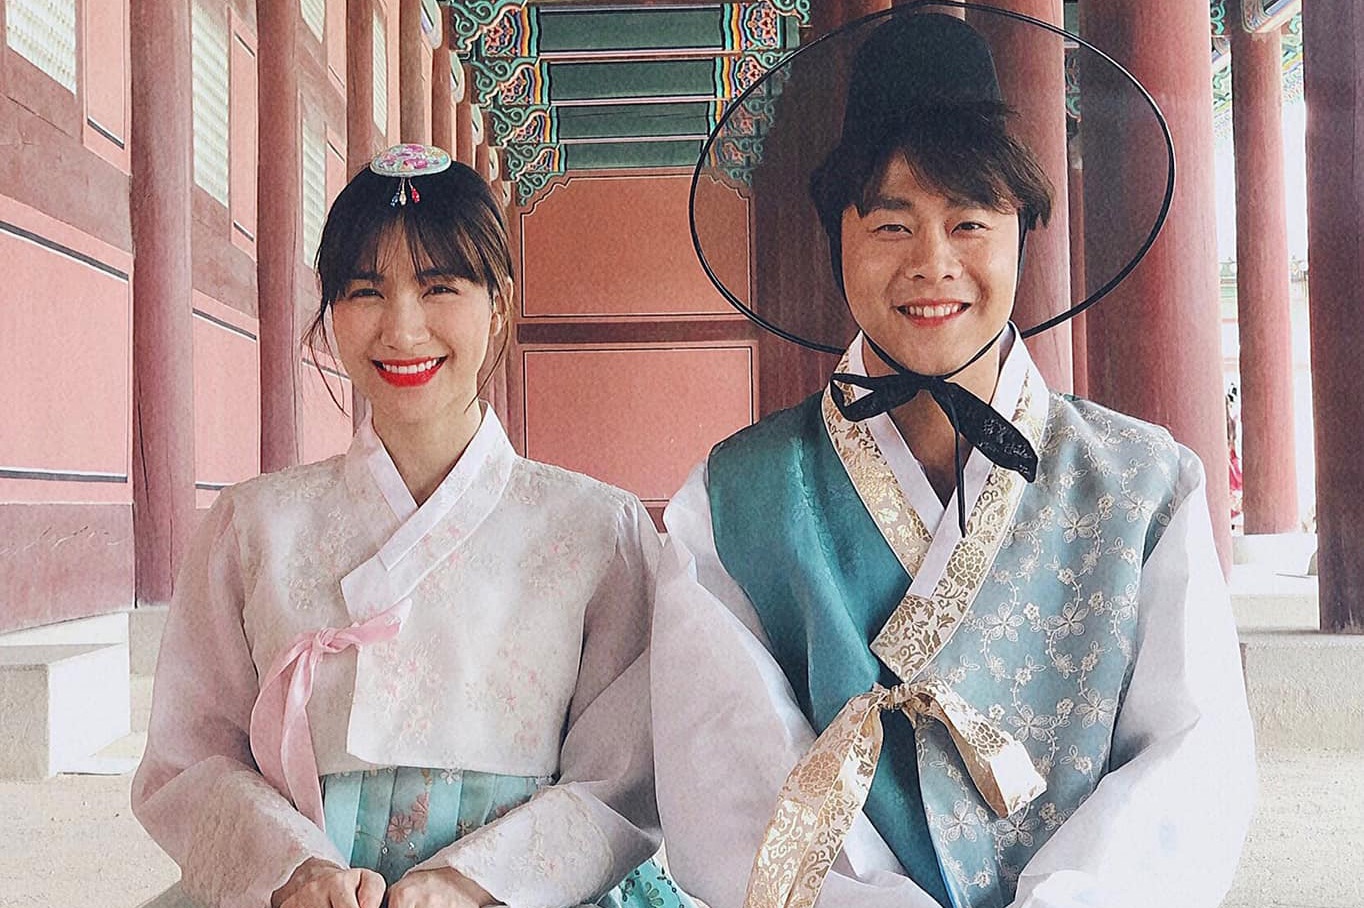 Hoà Minzy chụp ảnh cùng bạn trai trong trang phục truyền thống Hàn Quốc